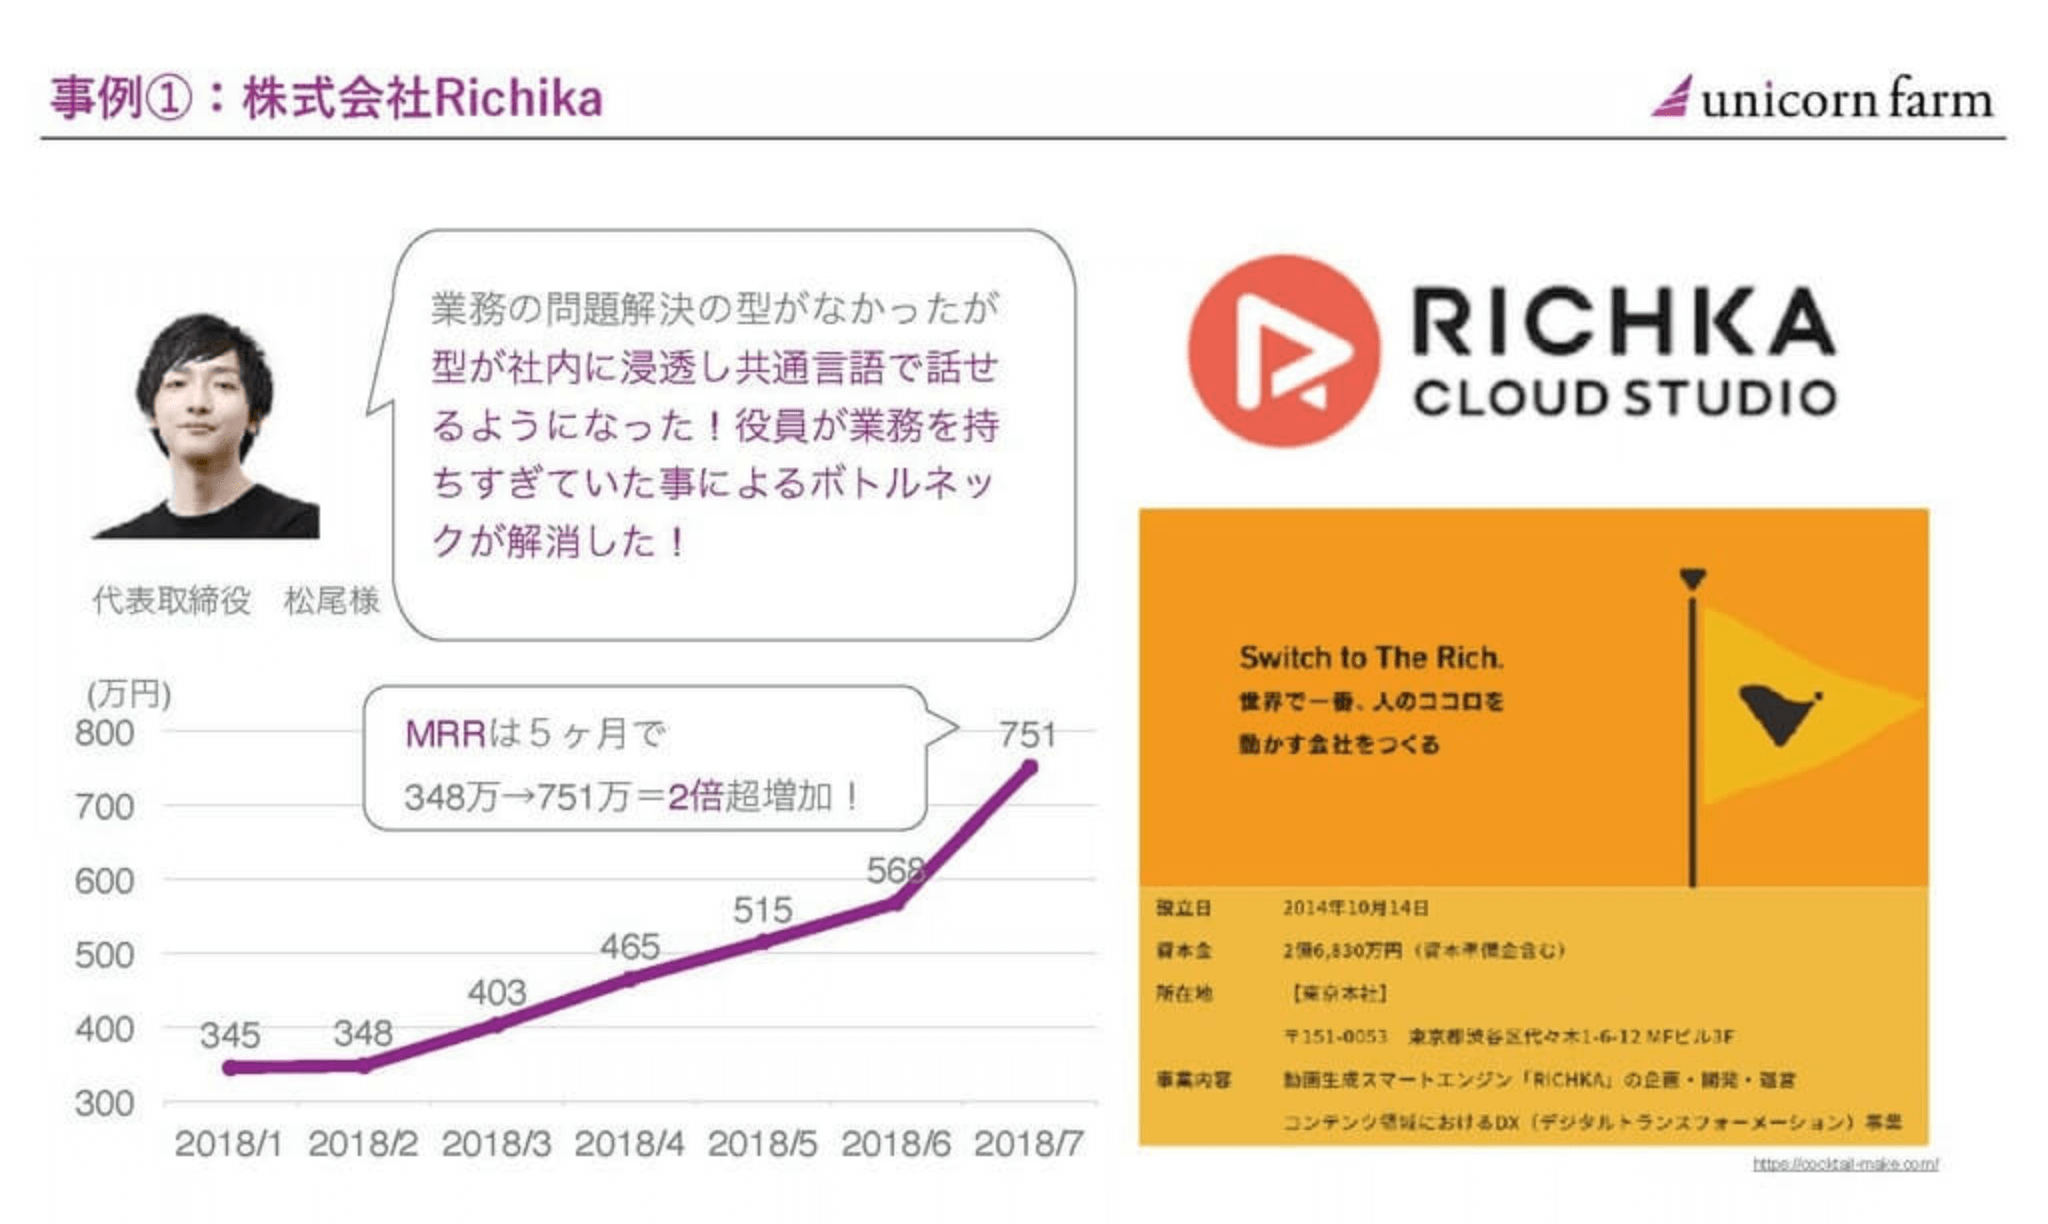 事例①：株式会社Richika